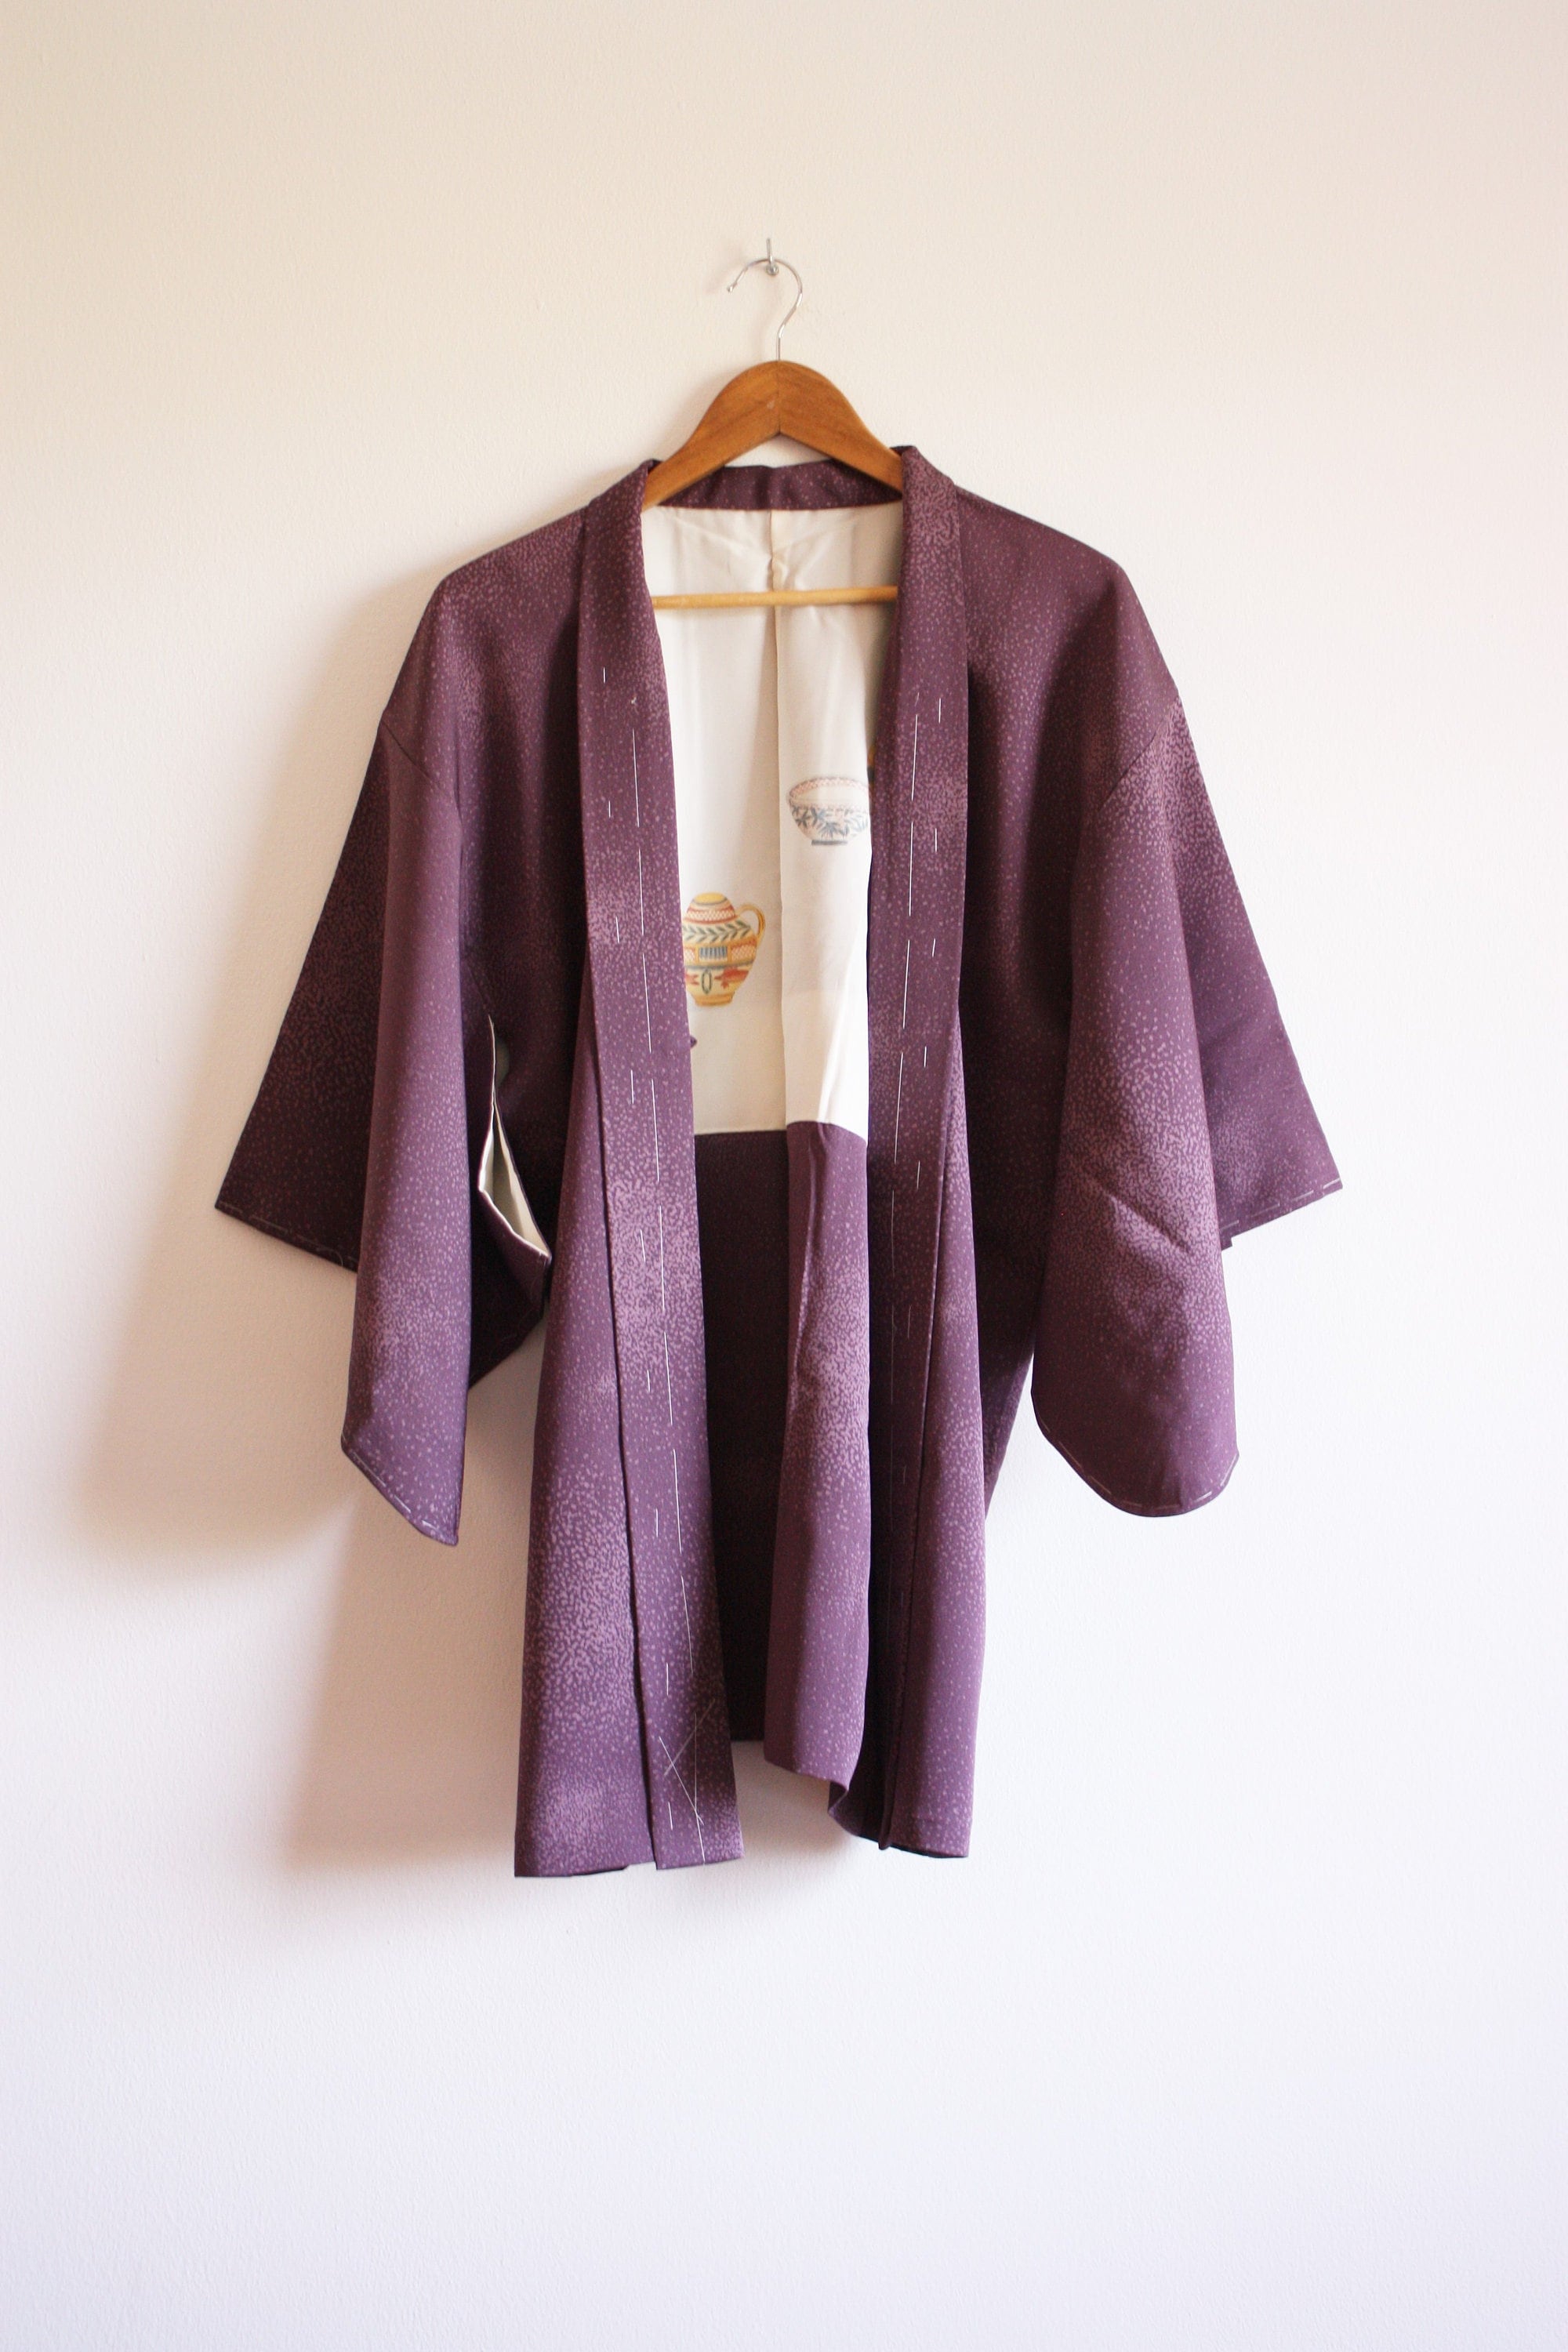 Silk HAORI With Himo (Cord) Women Japanese Vintage Kimono Jacket /943 ...